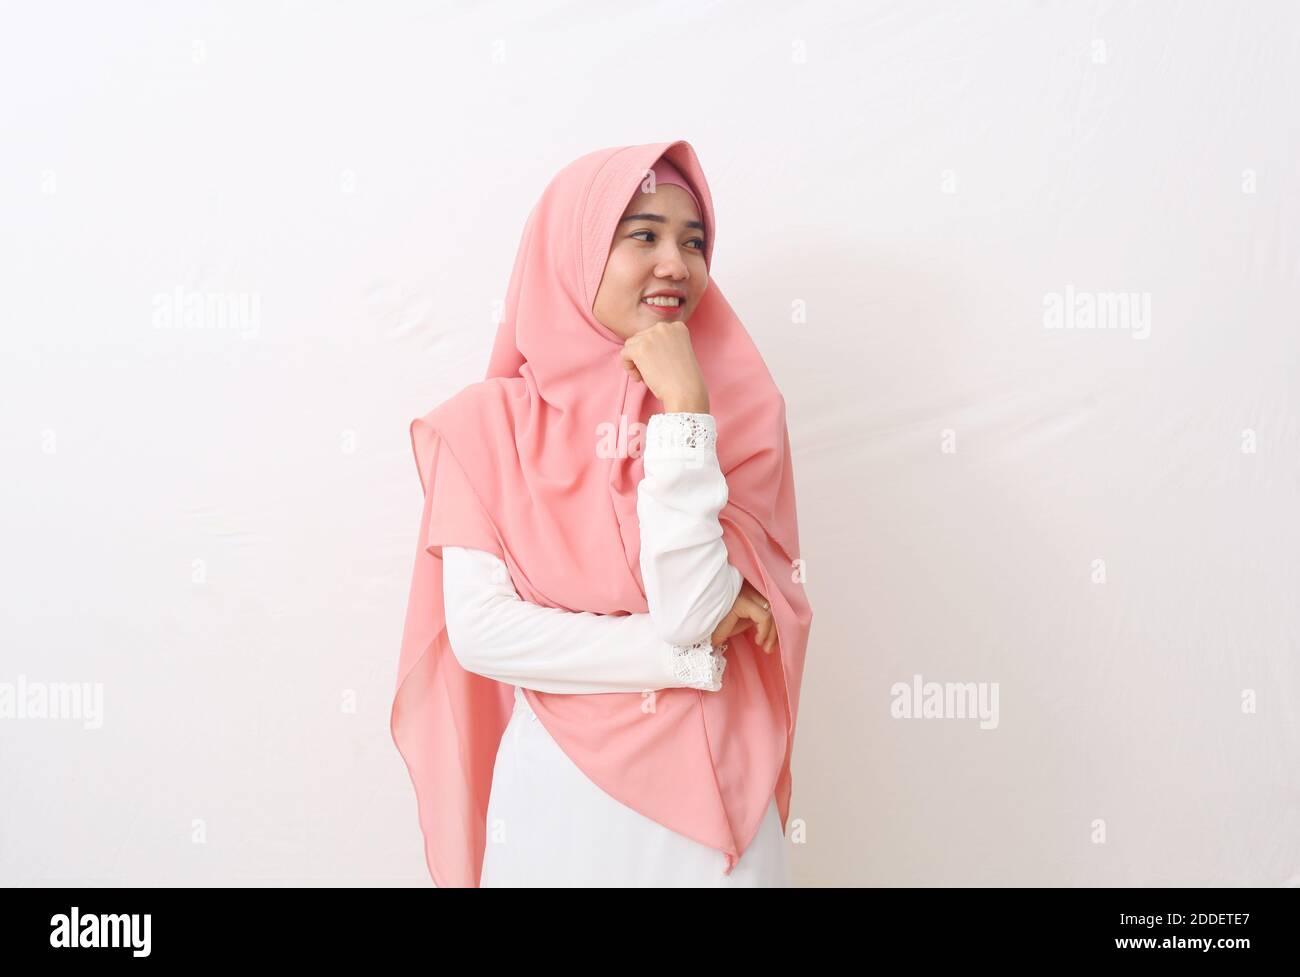 Un ritratto della donna musulmana asiatica felice che indossa un velo o un hijab che presenta e guarda lo spazio vuoto accanto a lei. Isolato su sfondo bianco con COP Foto Stock